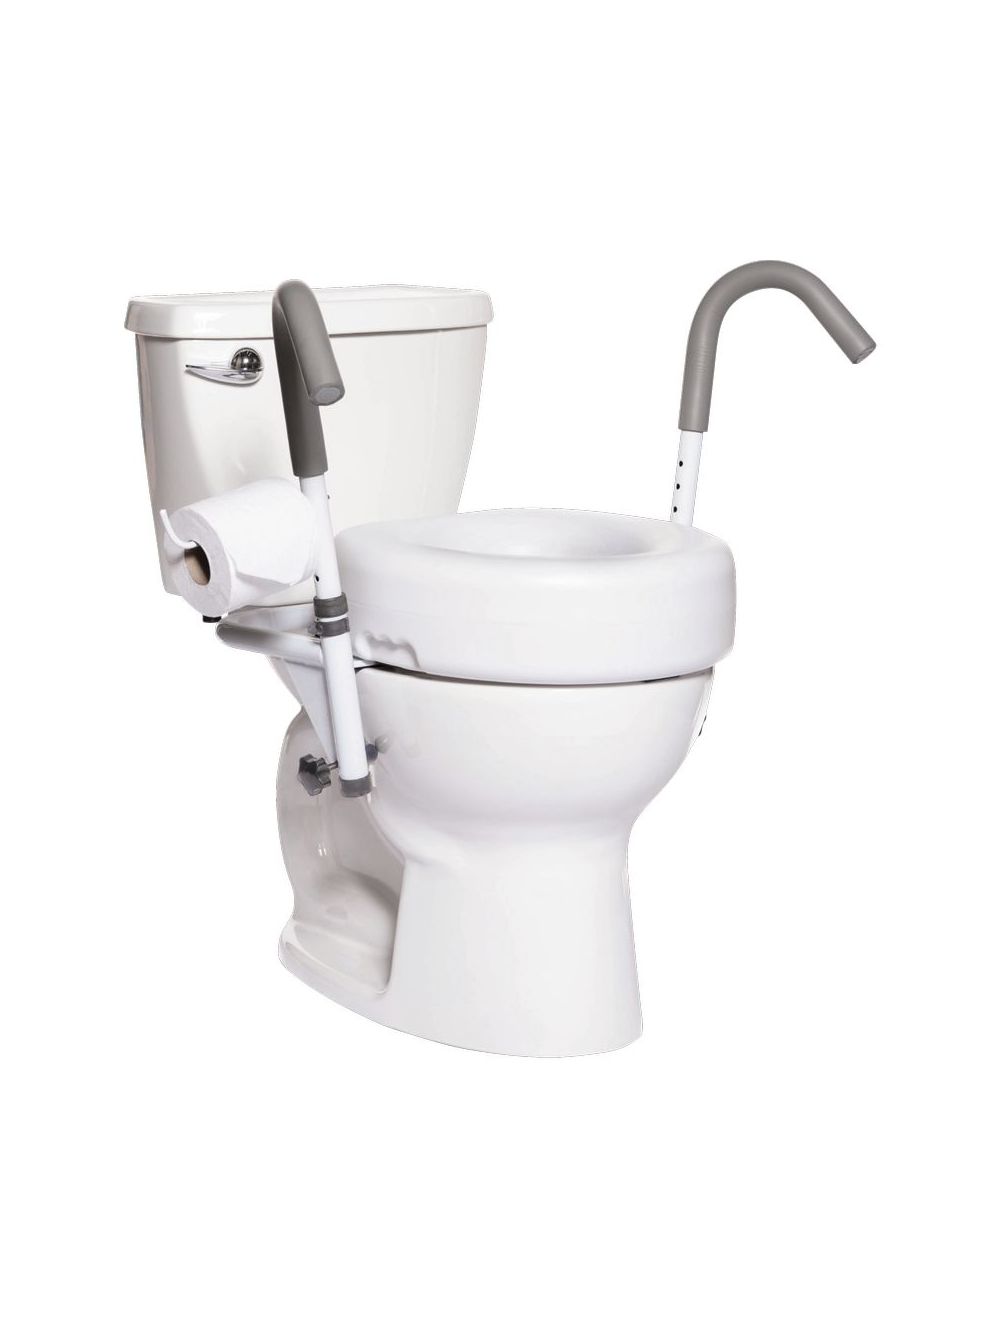 Protège cuvette de toilettes jetable XL